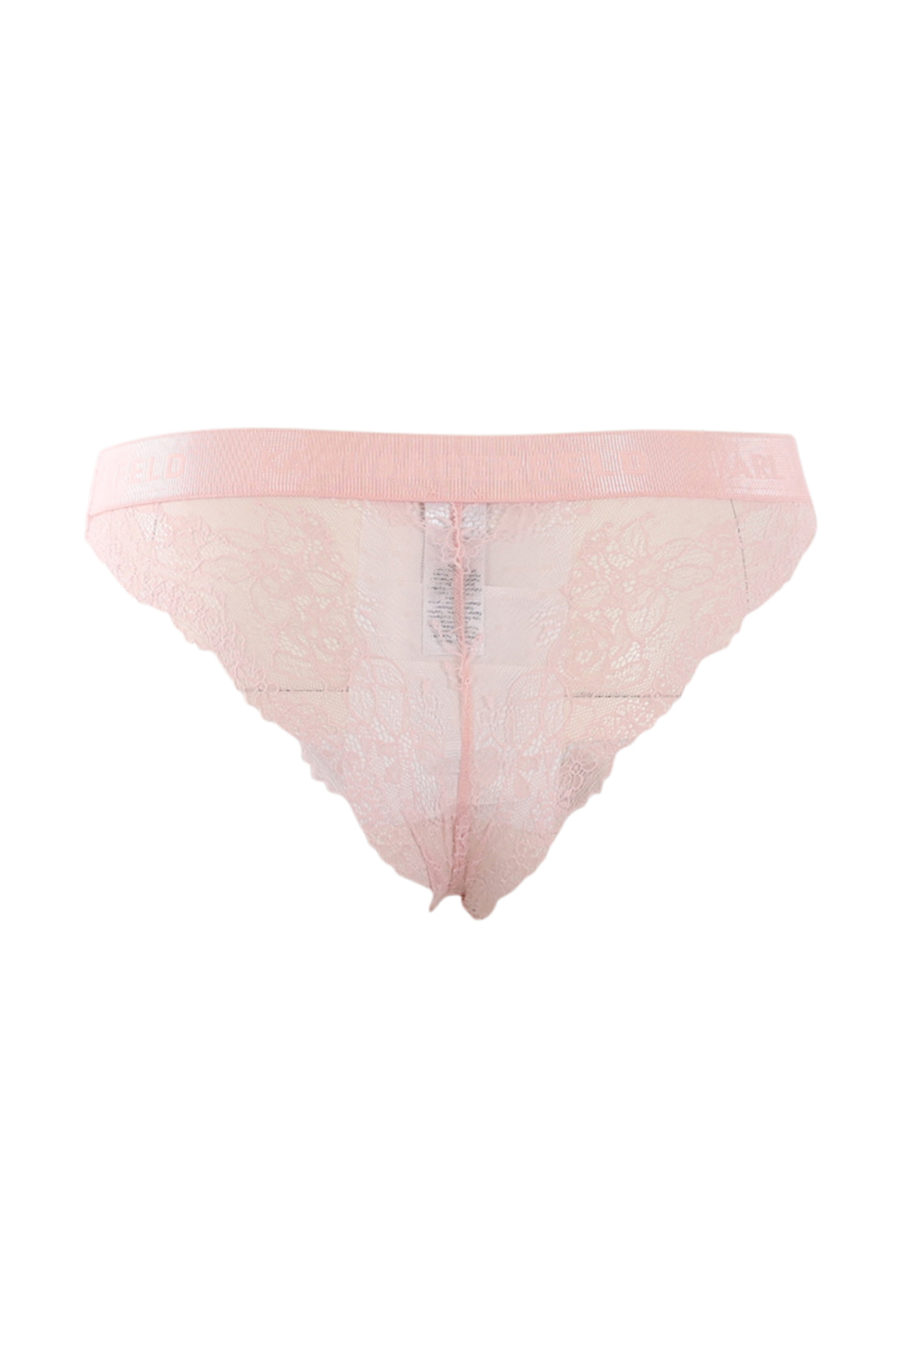 Cuecas cor-de-rosa com pormenor de renda - IMG 0611